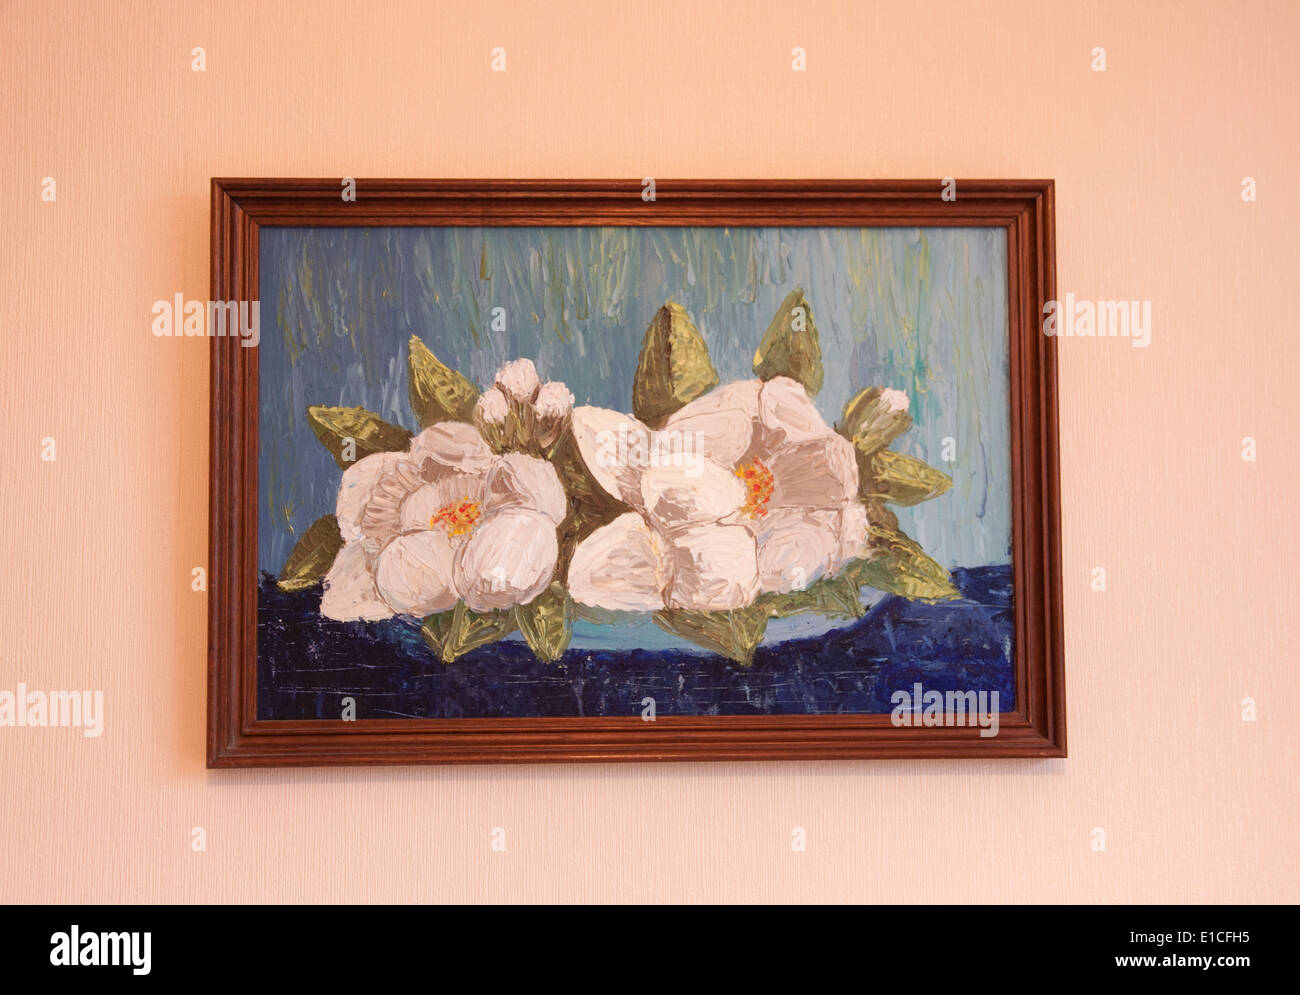 Photographie d'une peinture à l'huile, accroché sur un mur de fleurs Banque D'Images